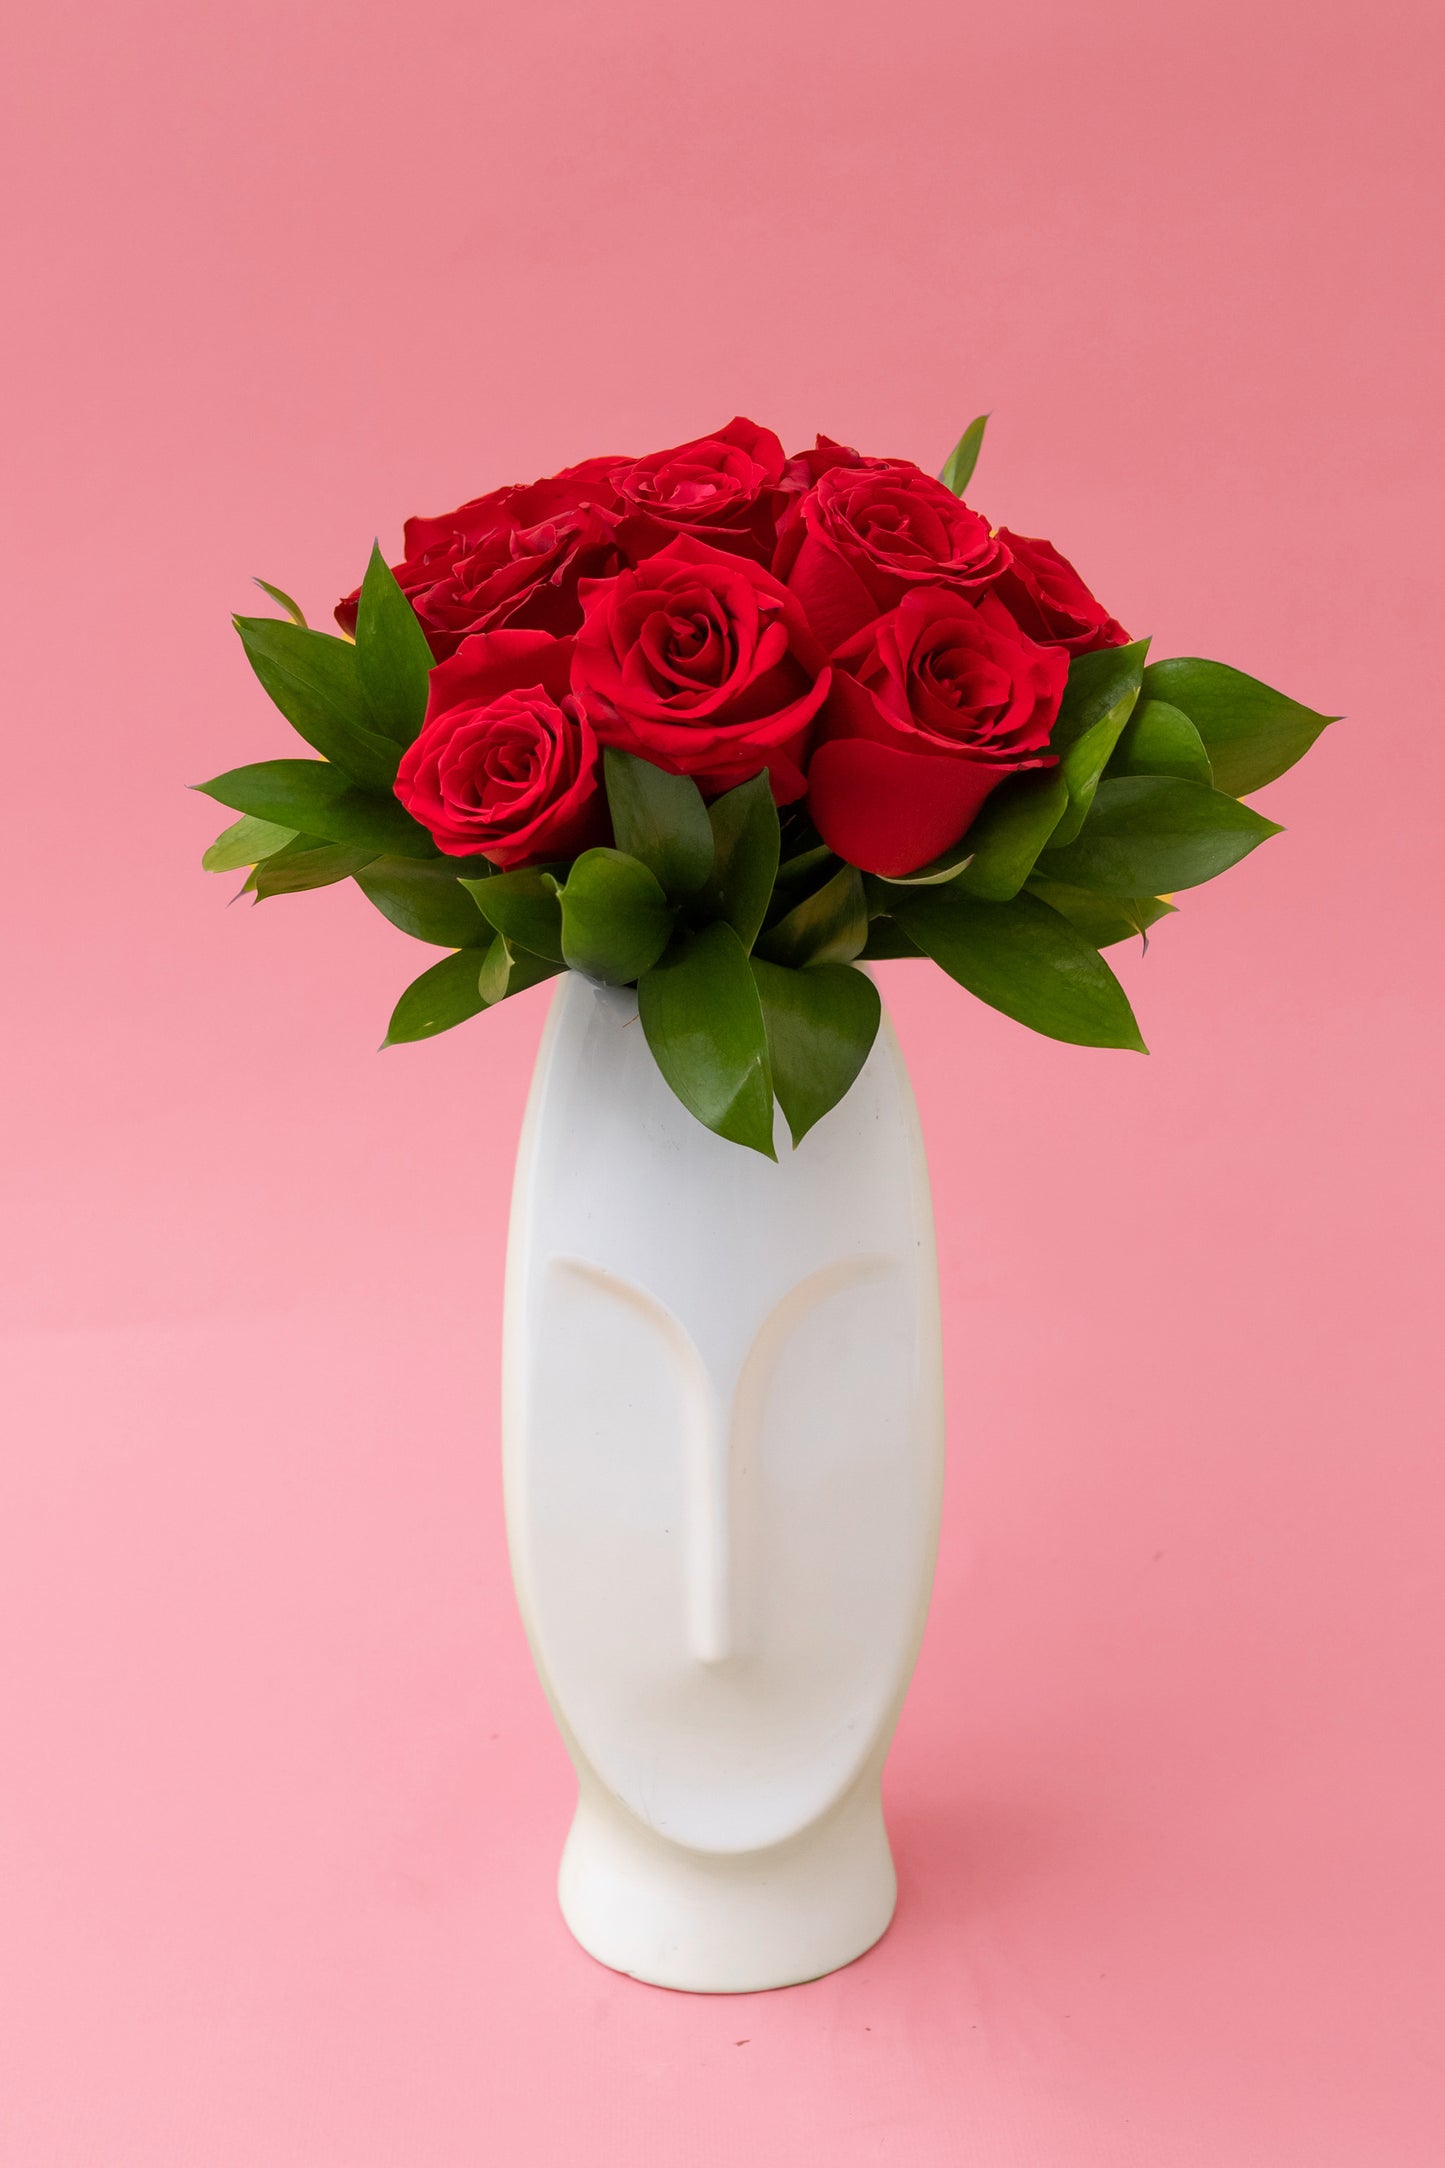 12 Rosas Rojas con Florero de Rostro - Flores